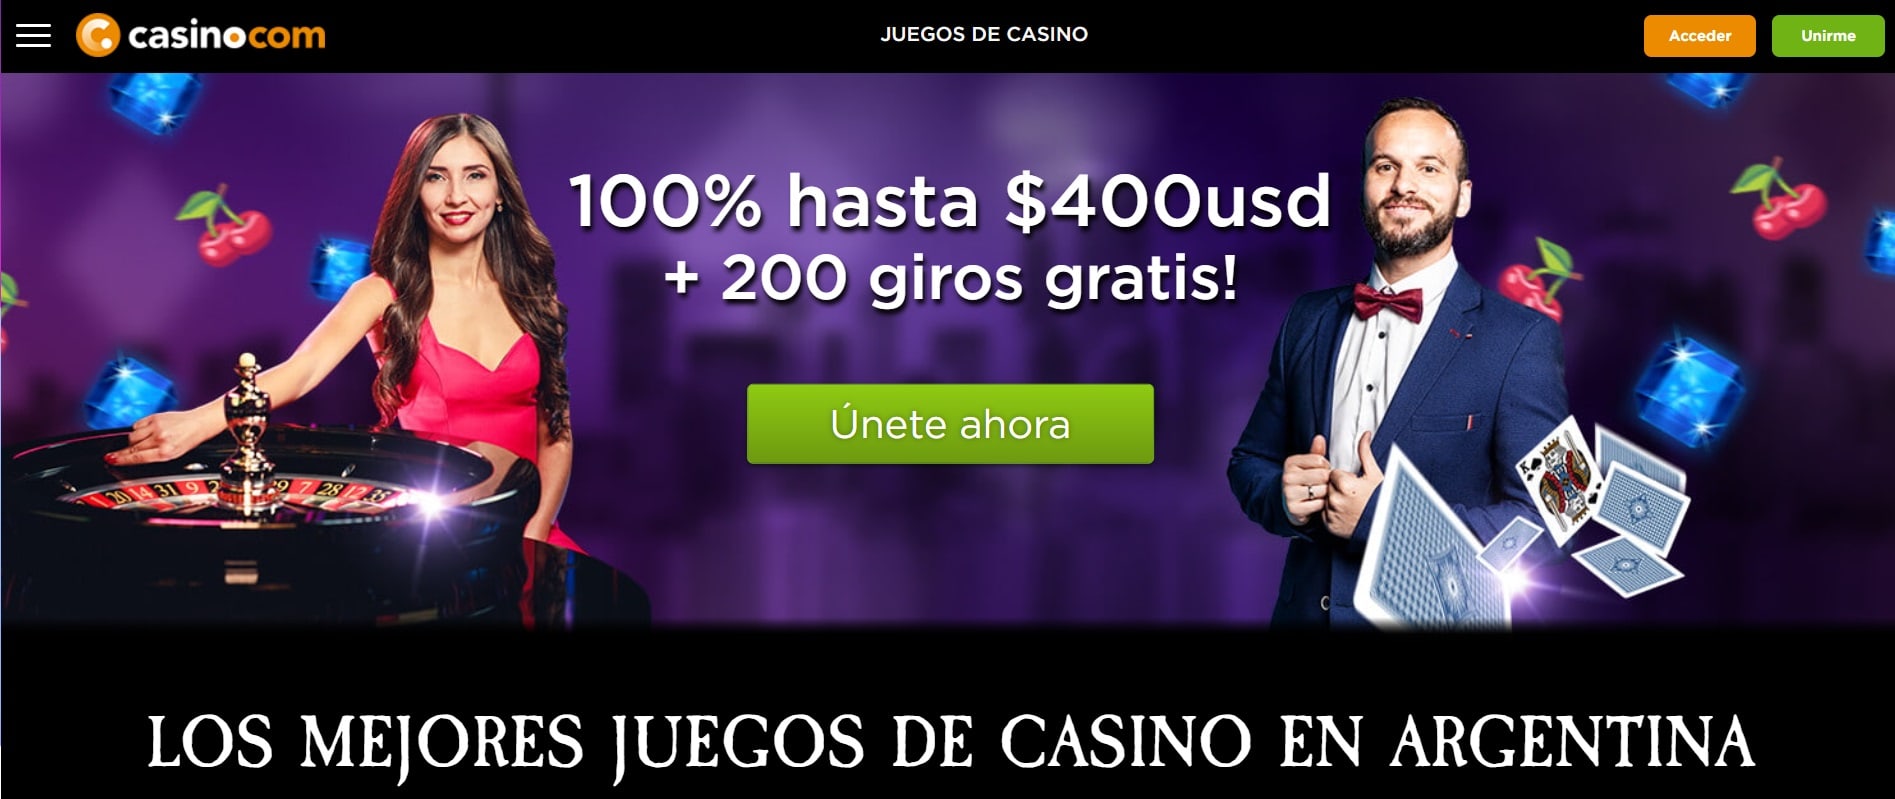 casino.com argentina